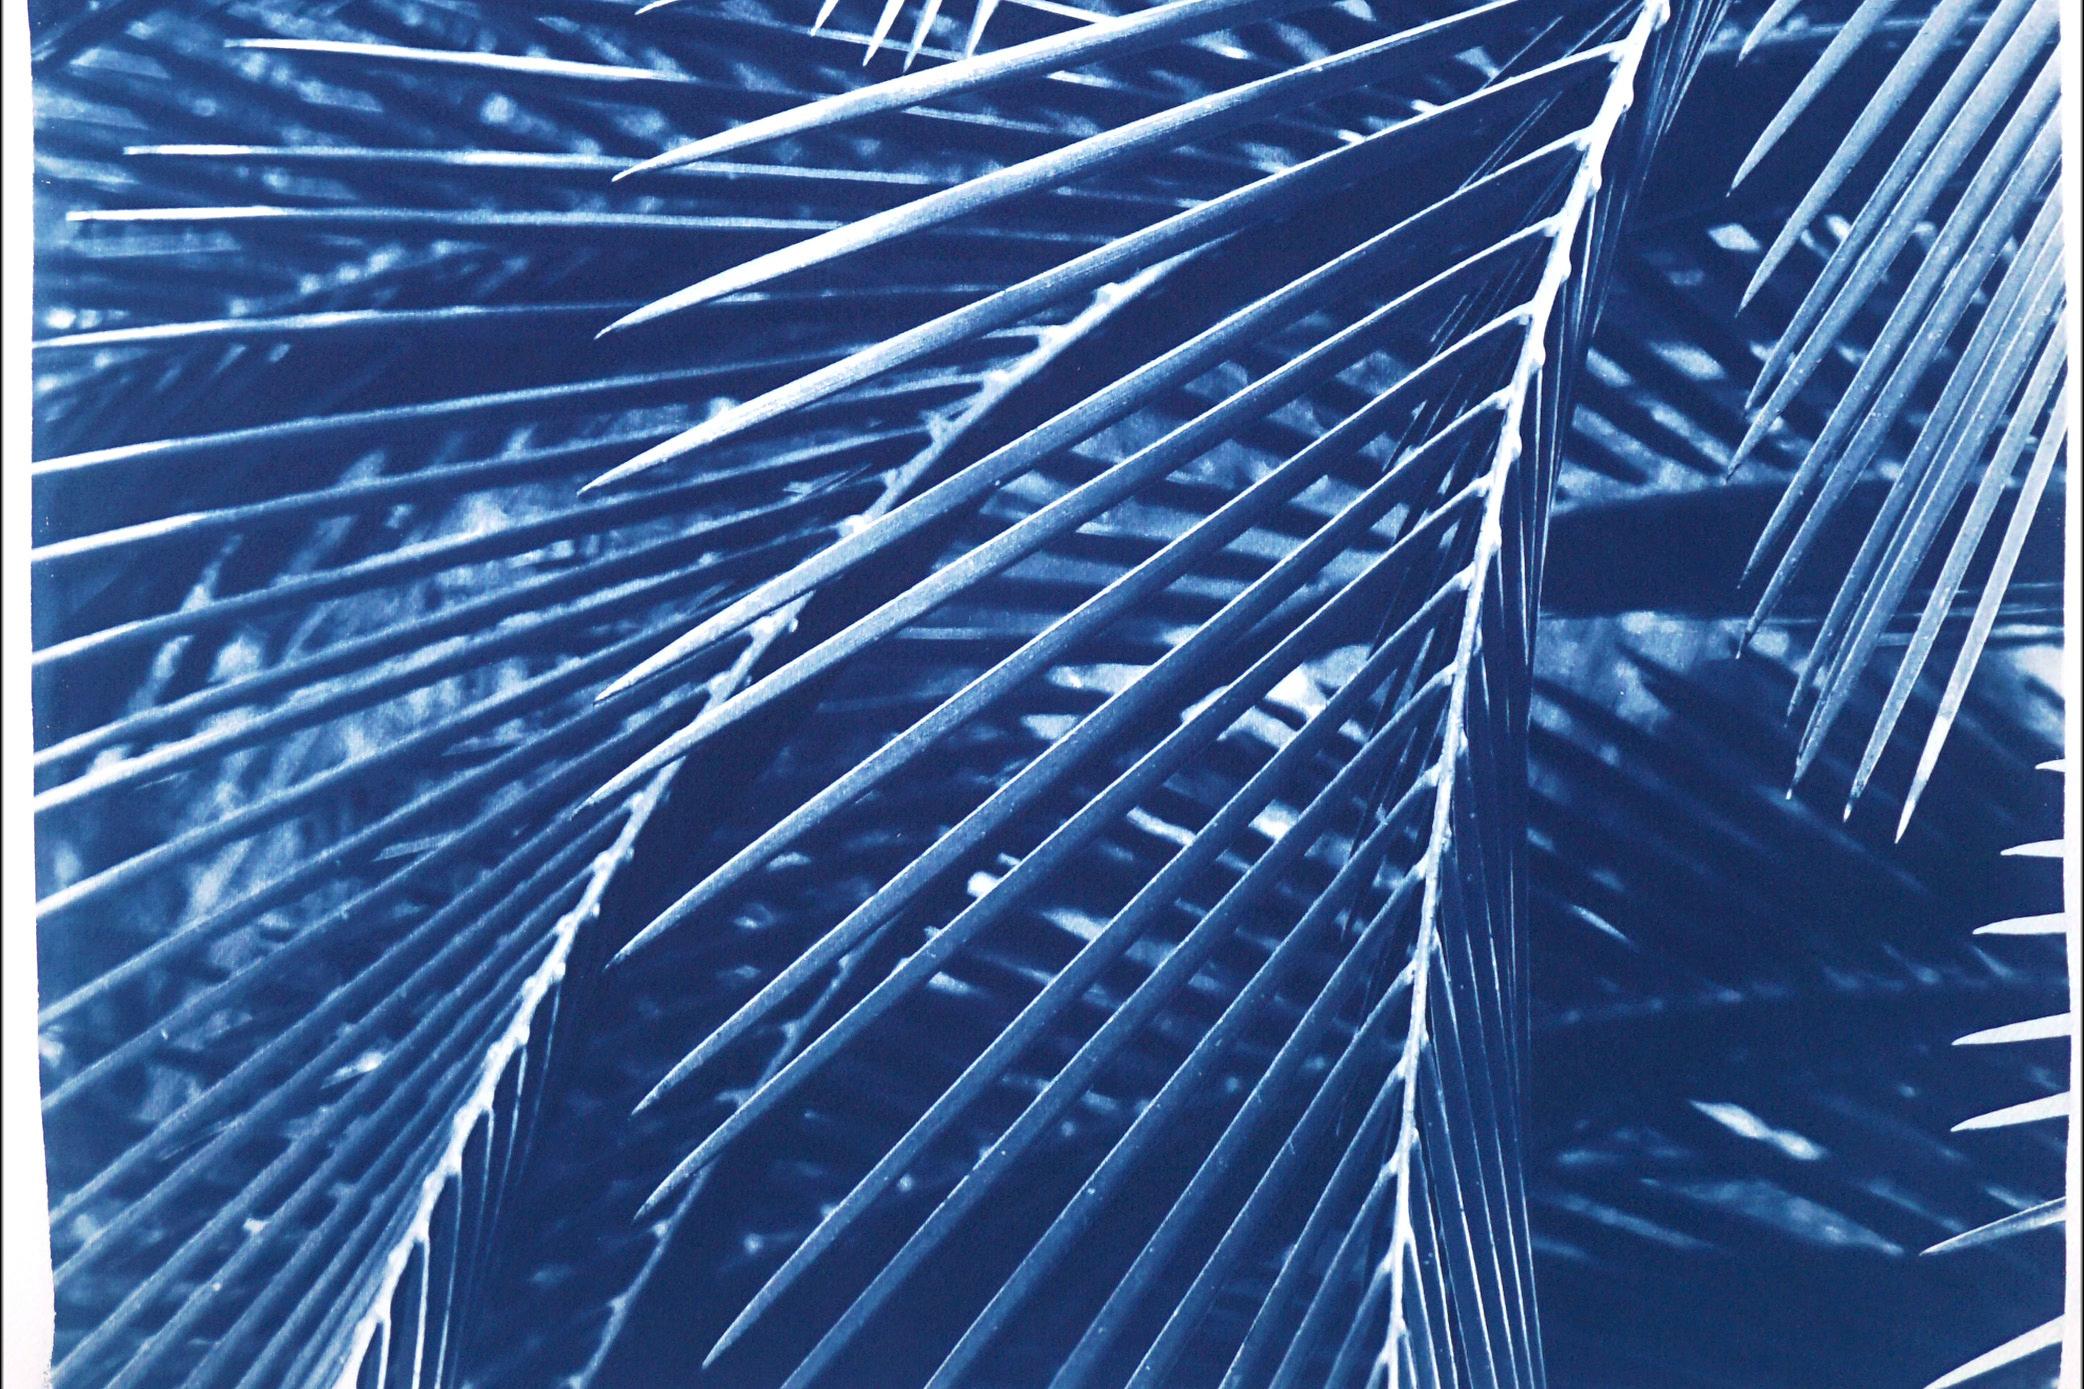 Dies ist eine exklusive handgedruckte Cyanotypie in limitierter Auflage von wunderschönen Palmenblättern. 

Einzelheiten:
+ Titel: Majestätisches Palmen-Muster
+ Jahr: 2021
+ Auflagenhöhe: 100
+ Gestempelt und mit Echtheitszertifikat versehen
+